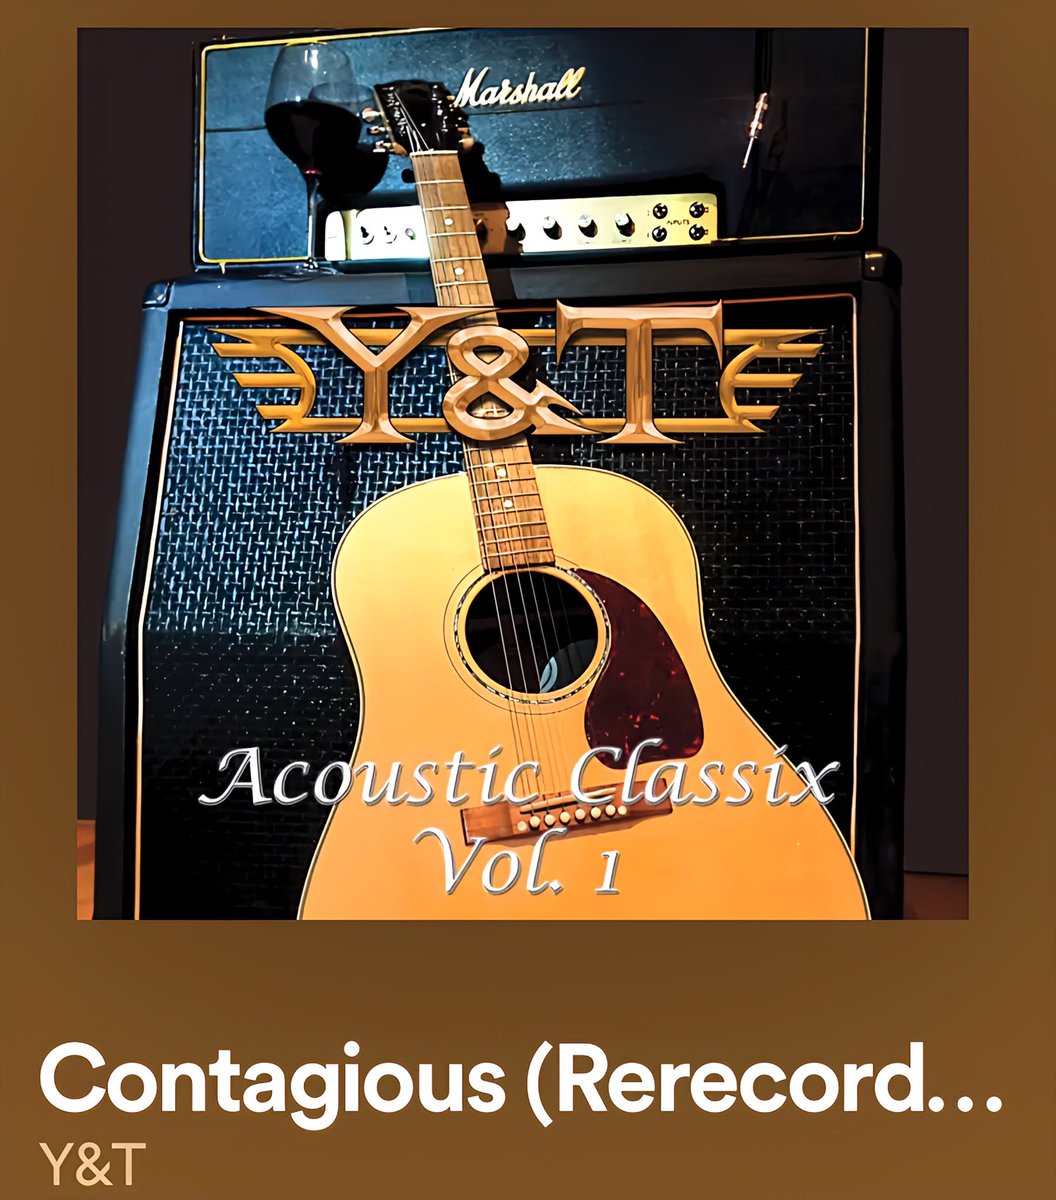 #ギターorベースが主張してるジャケット貼ろうぜ

Acoustic version もやたらカッコいい
ベスト選曲 & Rerecordingで、
いつ聴いても気持ちいいアルバムです😋
#YandT 

youtu.be/2WaBmeXuZdw?si…